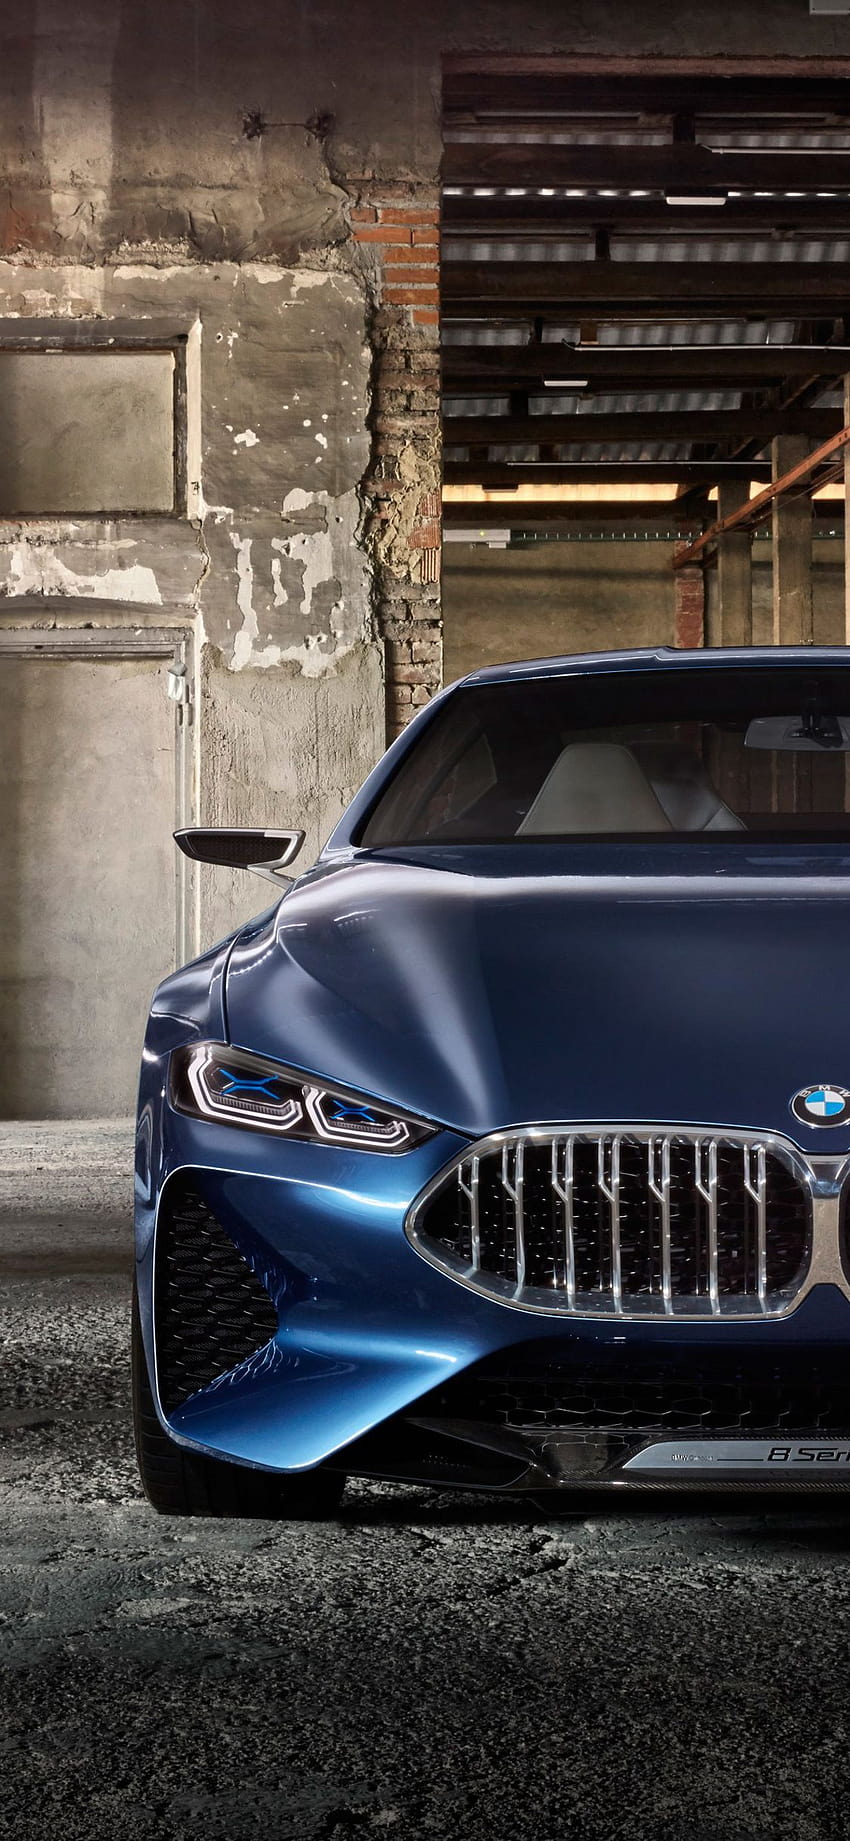 Những hình ảnh thiết kế hình nền đầy cá tính và mạnh mẽ của BMW là sự lựa chọn đúng đắn để thể hiện tinh thần đúng chuẩn của bạn. Hãy truy cập ngay để giải tỏa sự đam mê với sự cá tính trên những chiếc xe này.